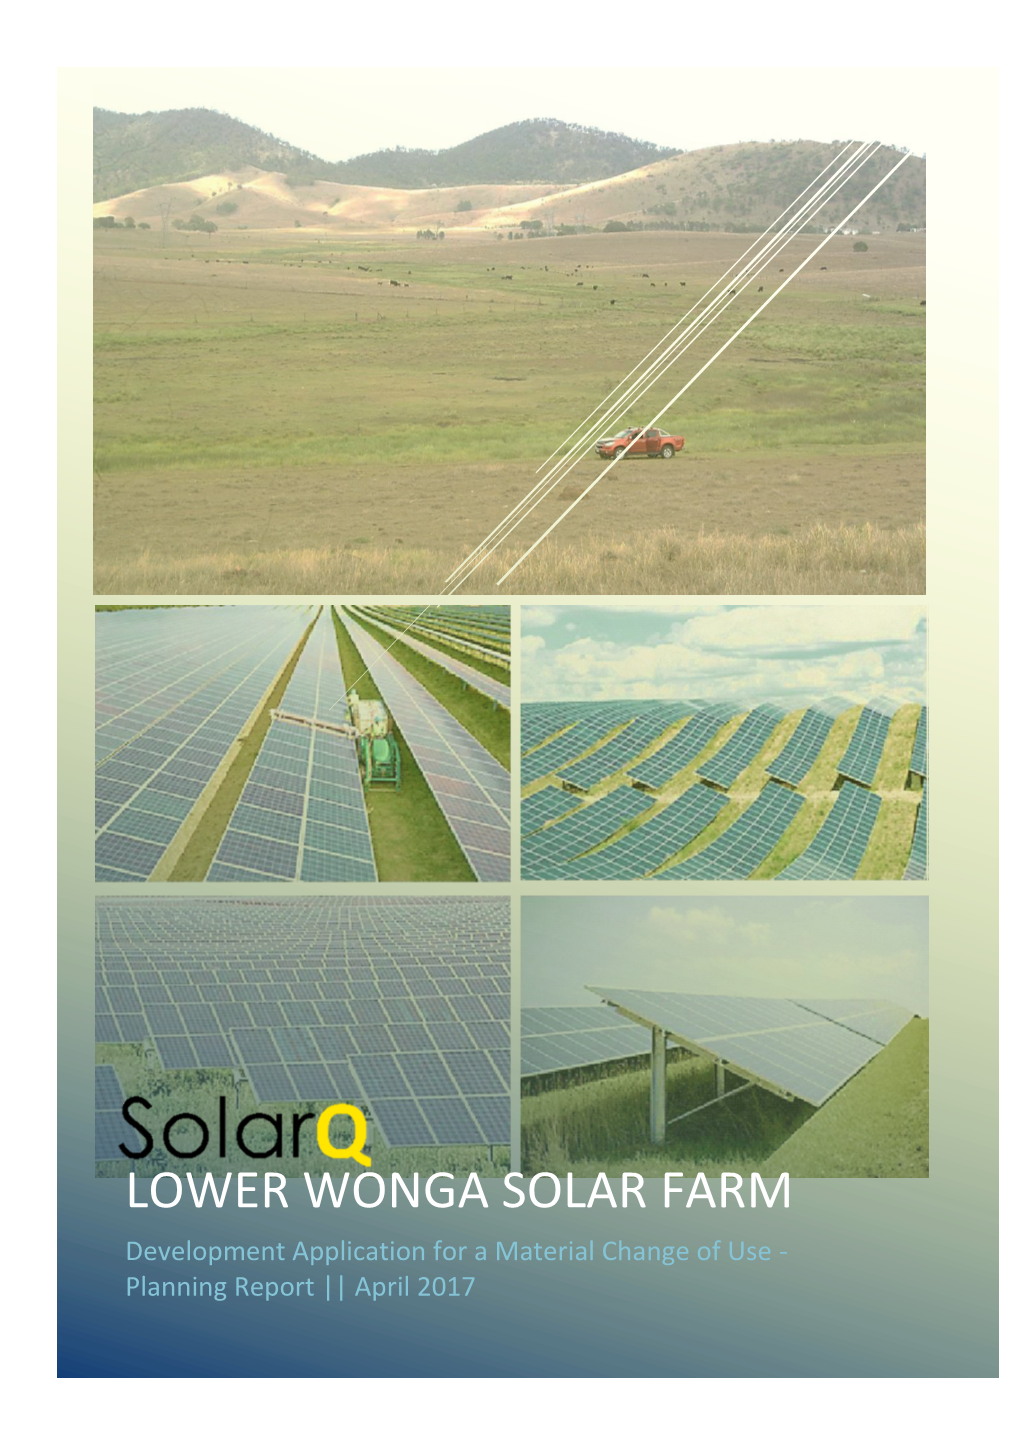 Lower Wonga Solar Farm